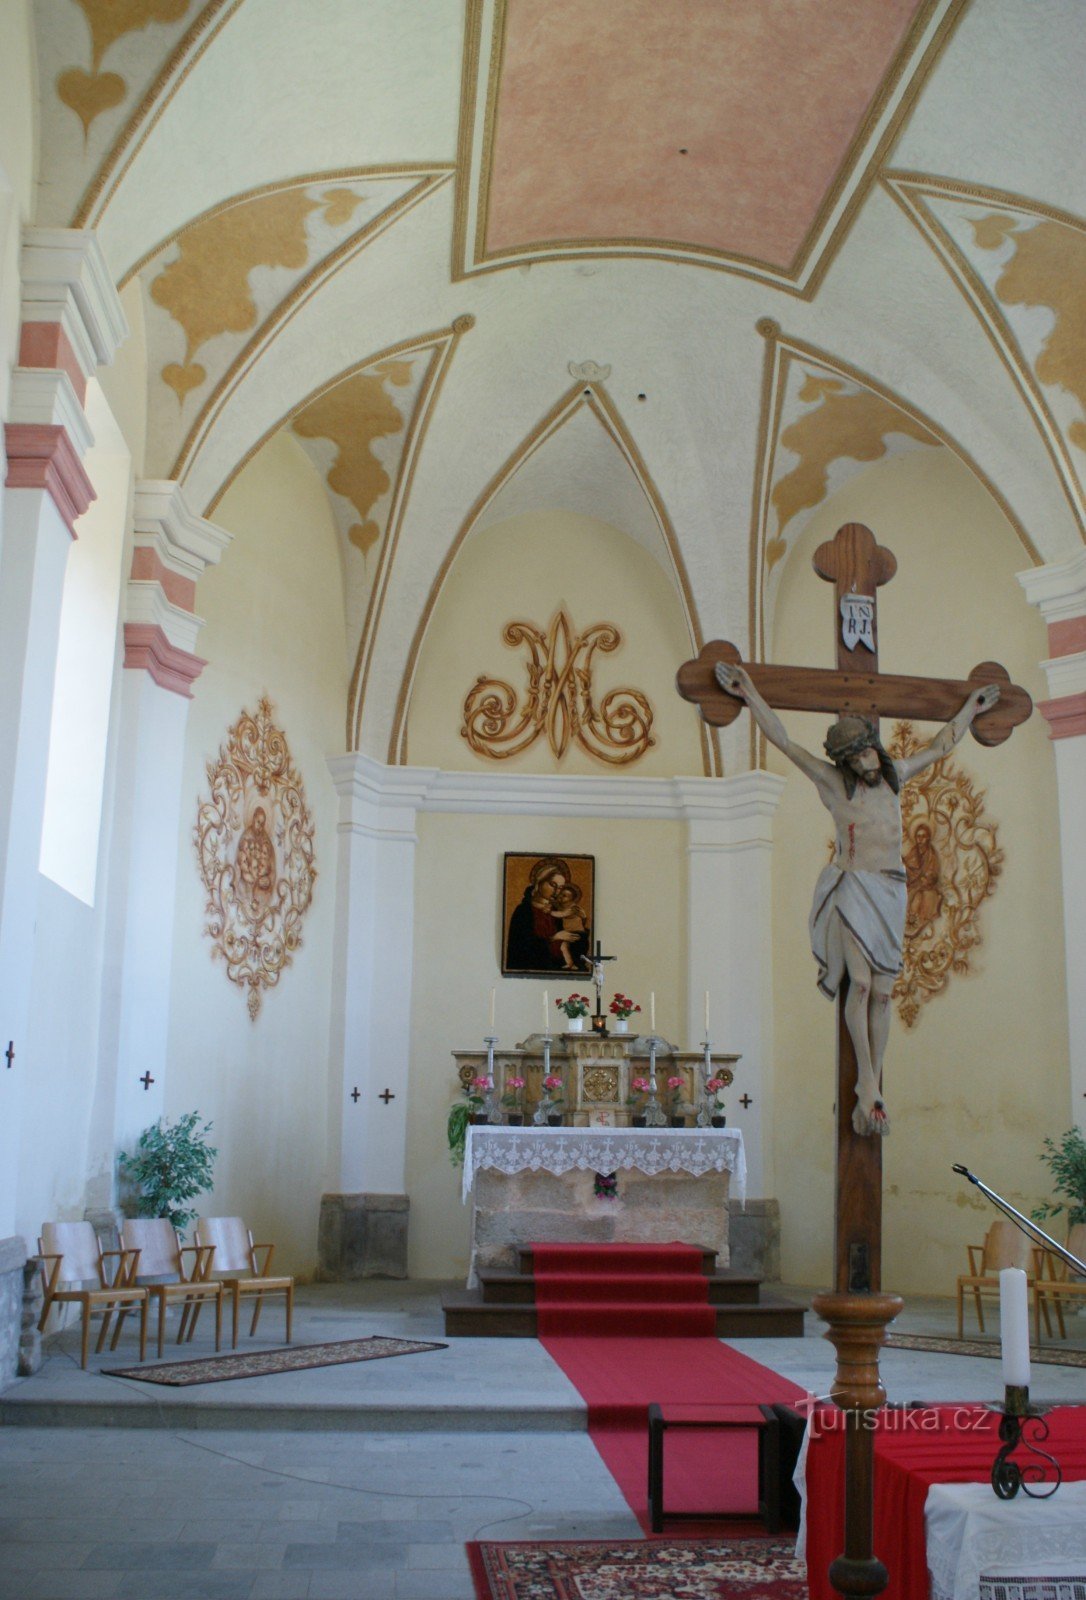 Svatý Kámen (vicino a Rychnov nad Malší) – Chiesa di Nostra Signora della Neve